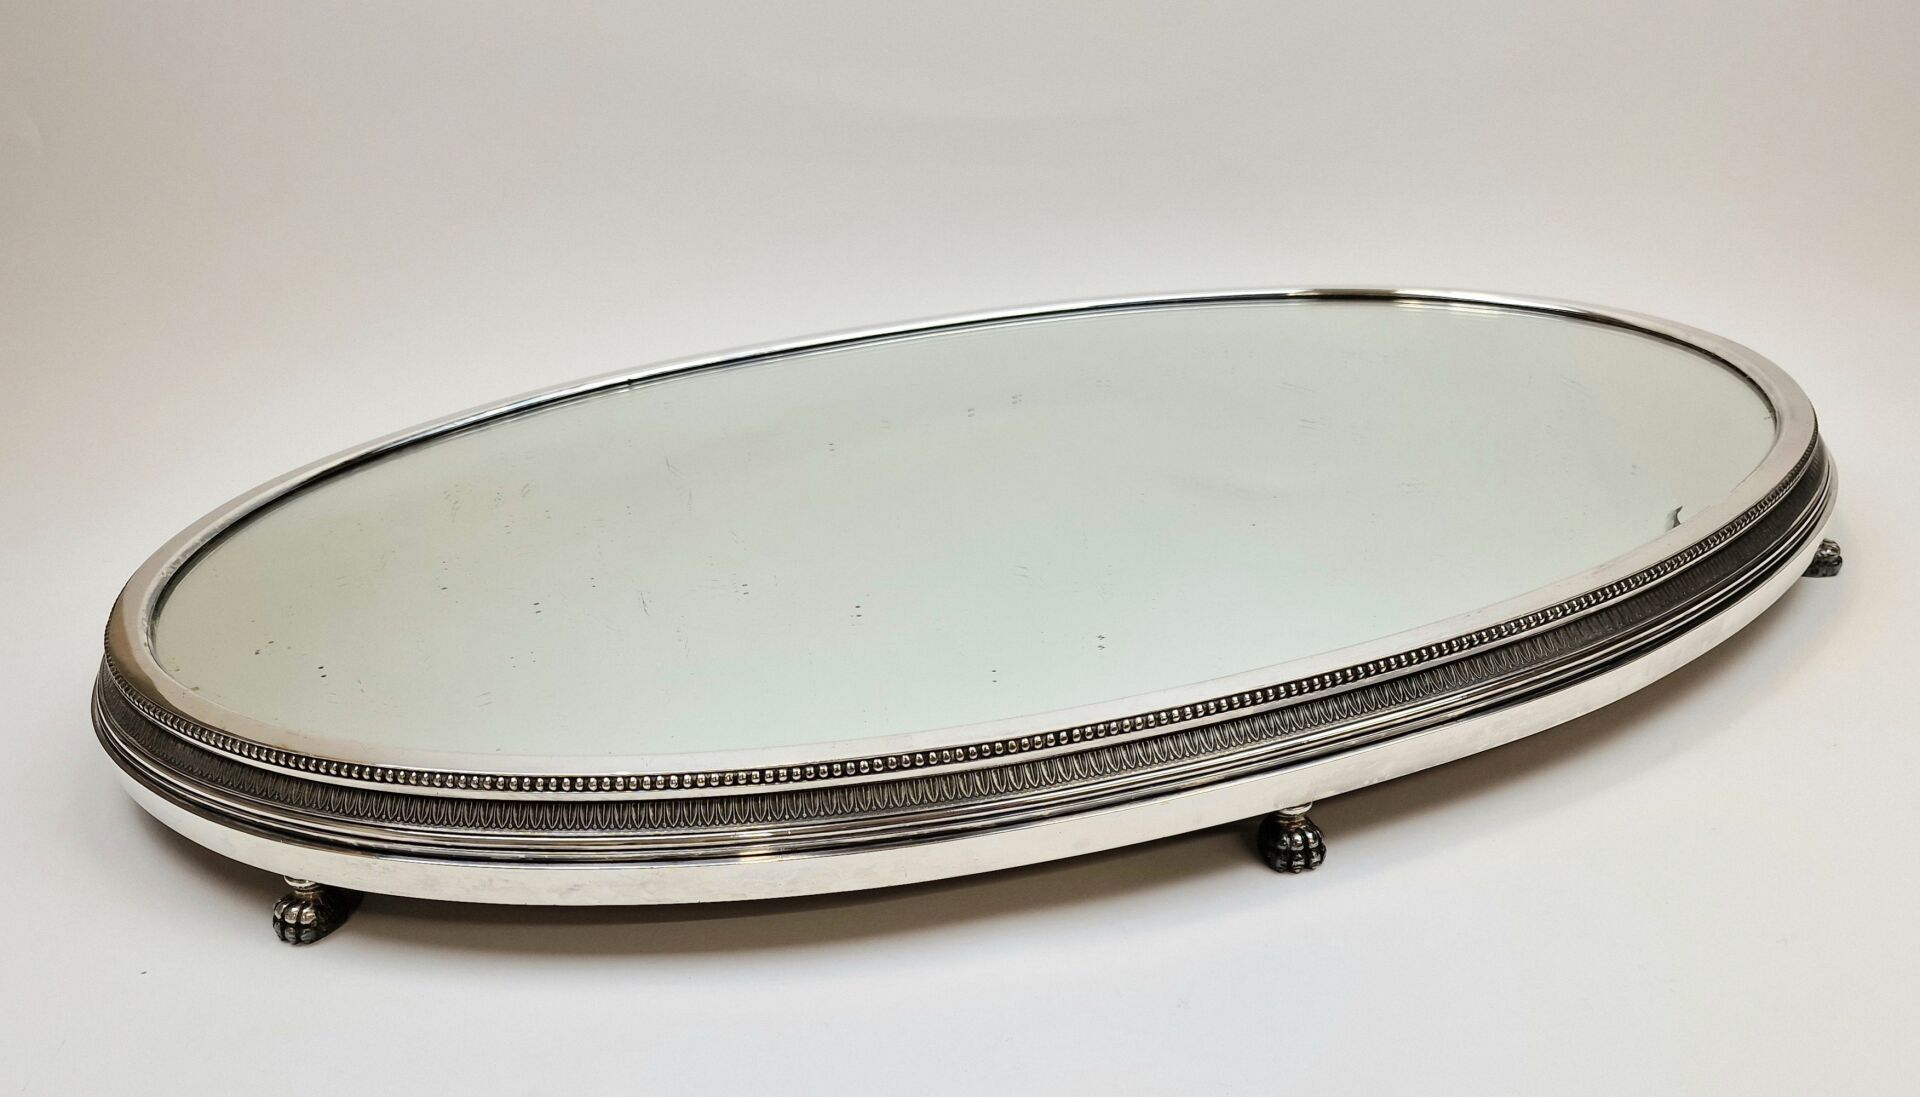 Null A.RISLER & CARRÉ 巴黎店
椭圆形镀银金属桌面，镜面底座镶有一排珍珠，并有四只狮爪支撑。
73 x 50 厘米
(玻璃碎裂）